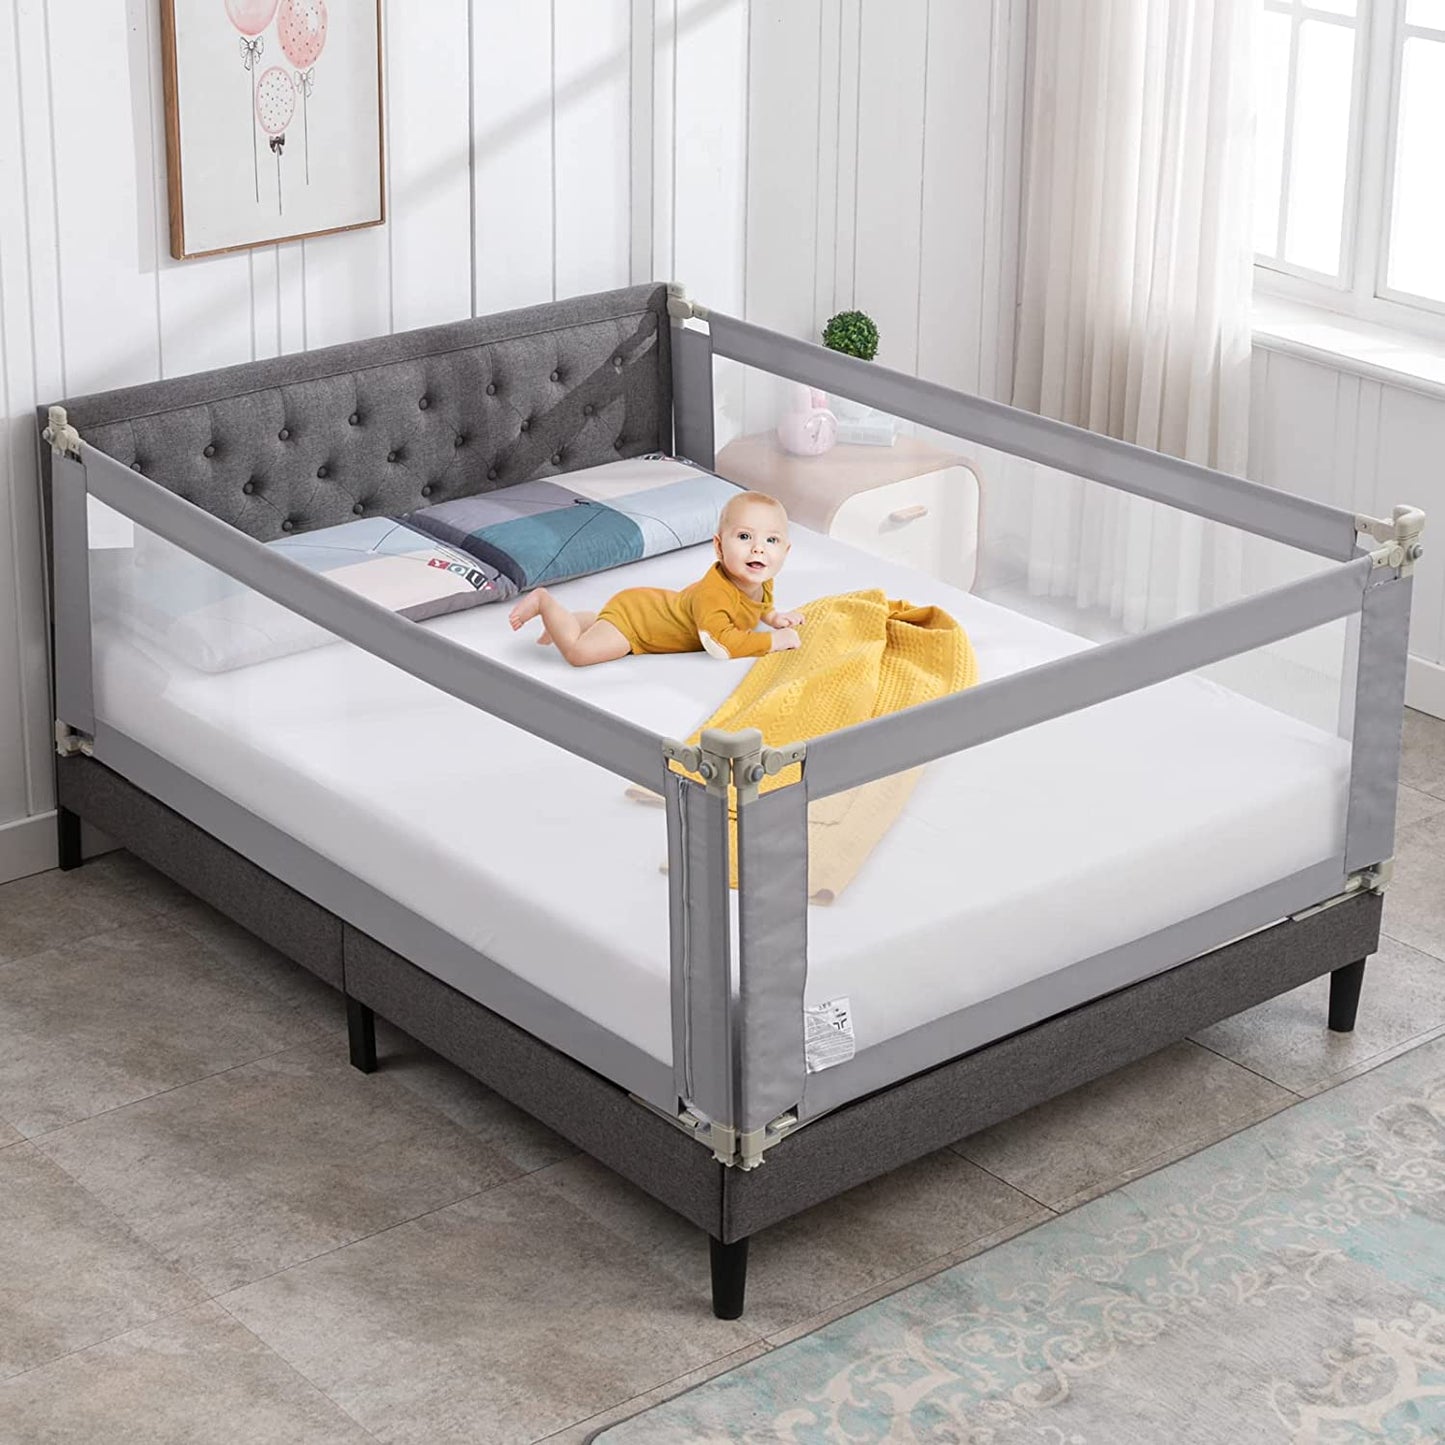 3-piece baby bed playpen for children bed playpen for queen size beds